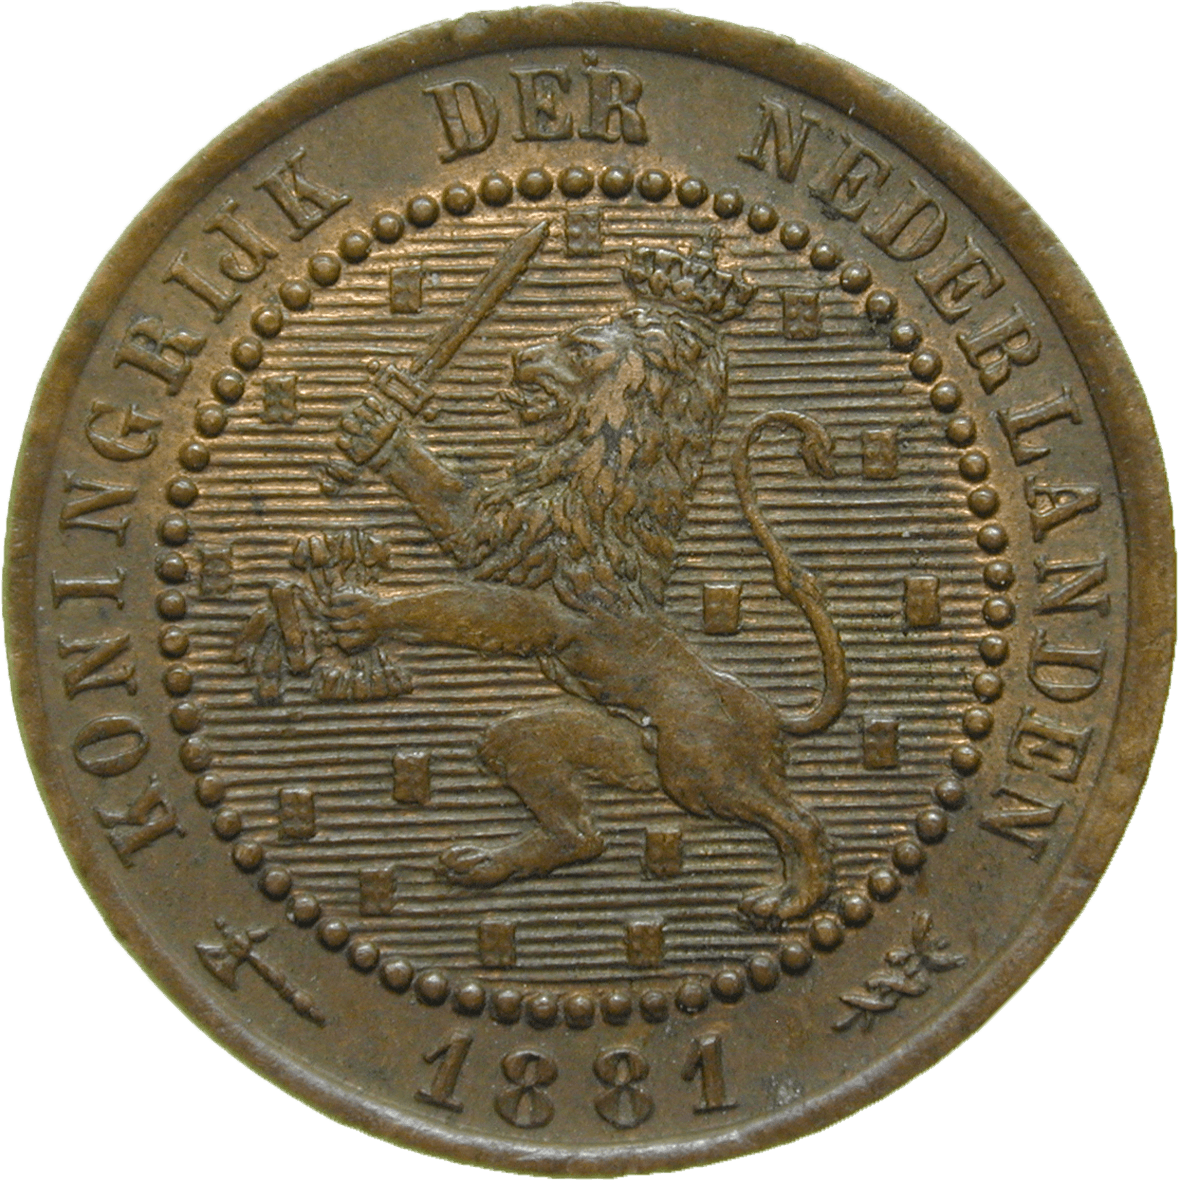 Königreich der Niederlande, Wilhelm III., 1 Cent 1881 (obverse)